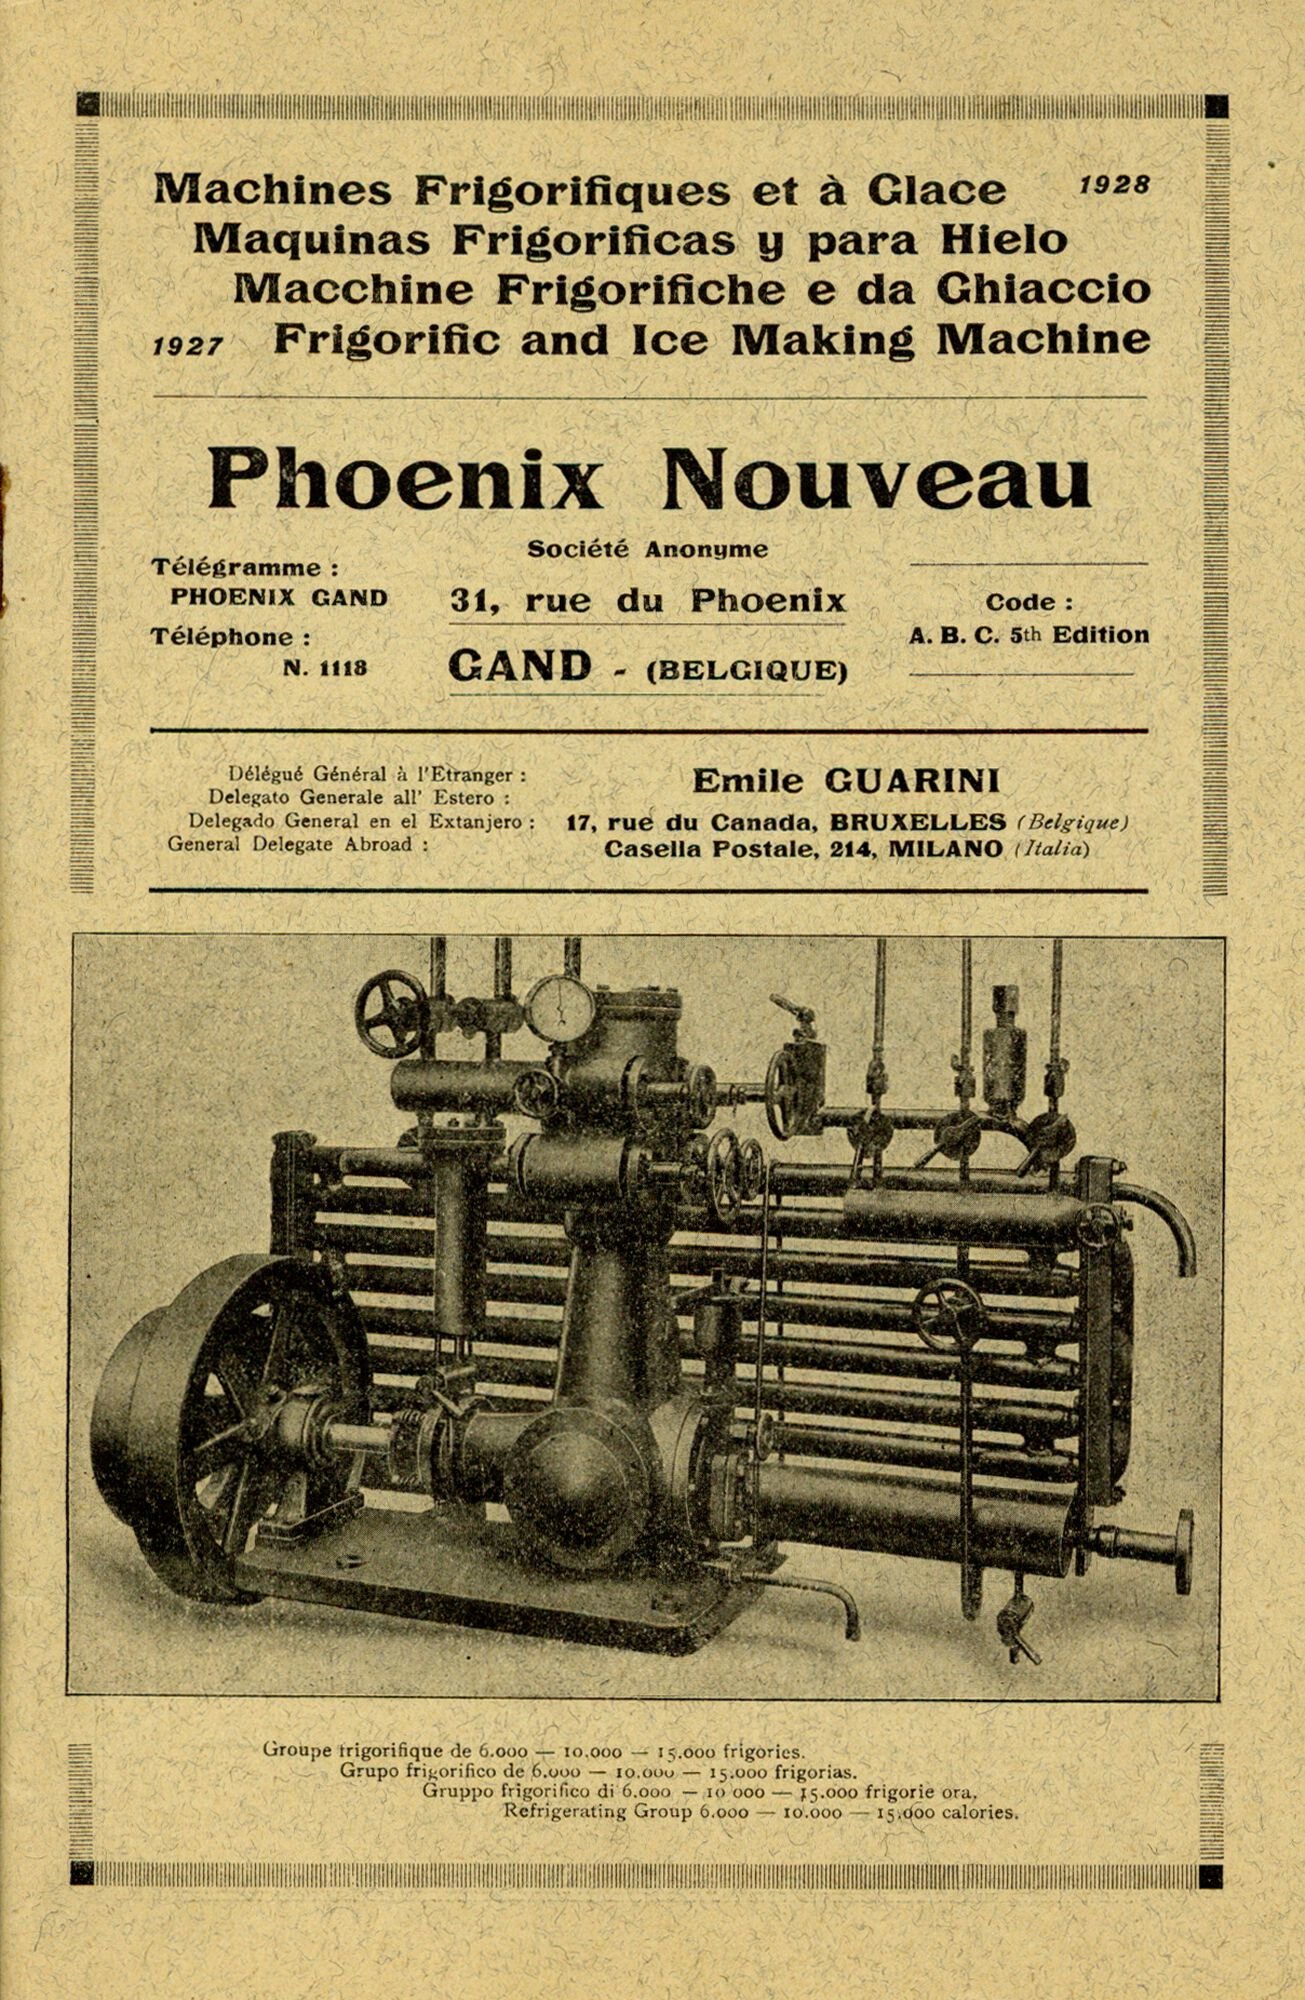 Productbrochure over koelmachines geproduceerd door machinebouwer Phoenix Nouveau in Gent